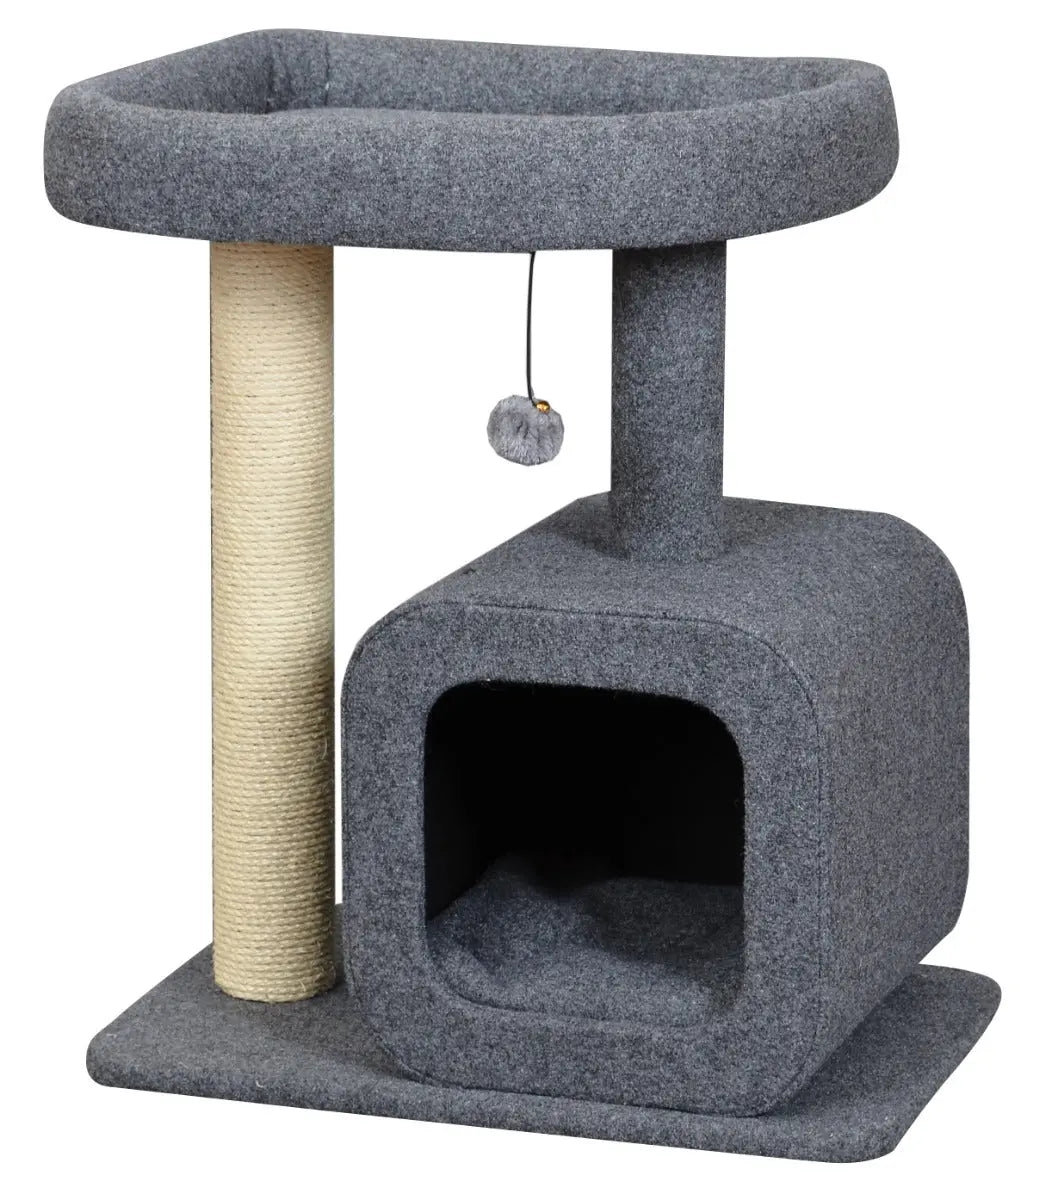 Krabpaal voor katten met huisje | Houd je kat vermaakt | 2 niveaus | Gezellige slaapplek | Springplatform Coolgods